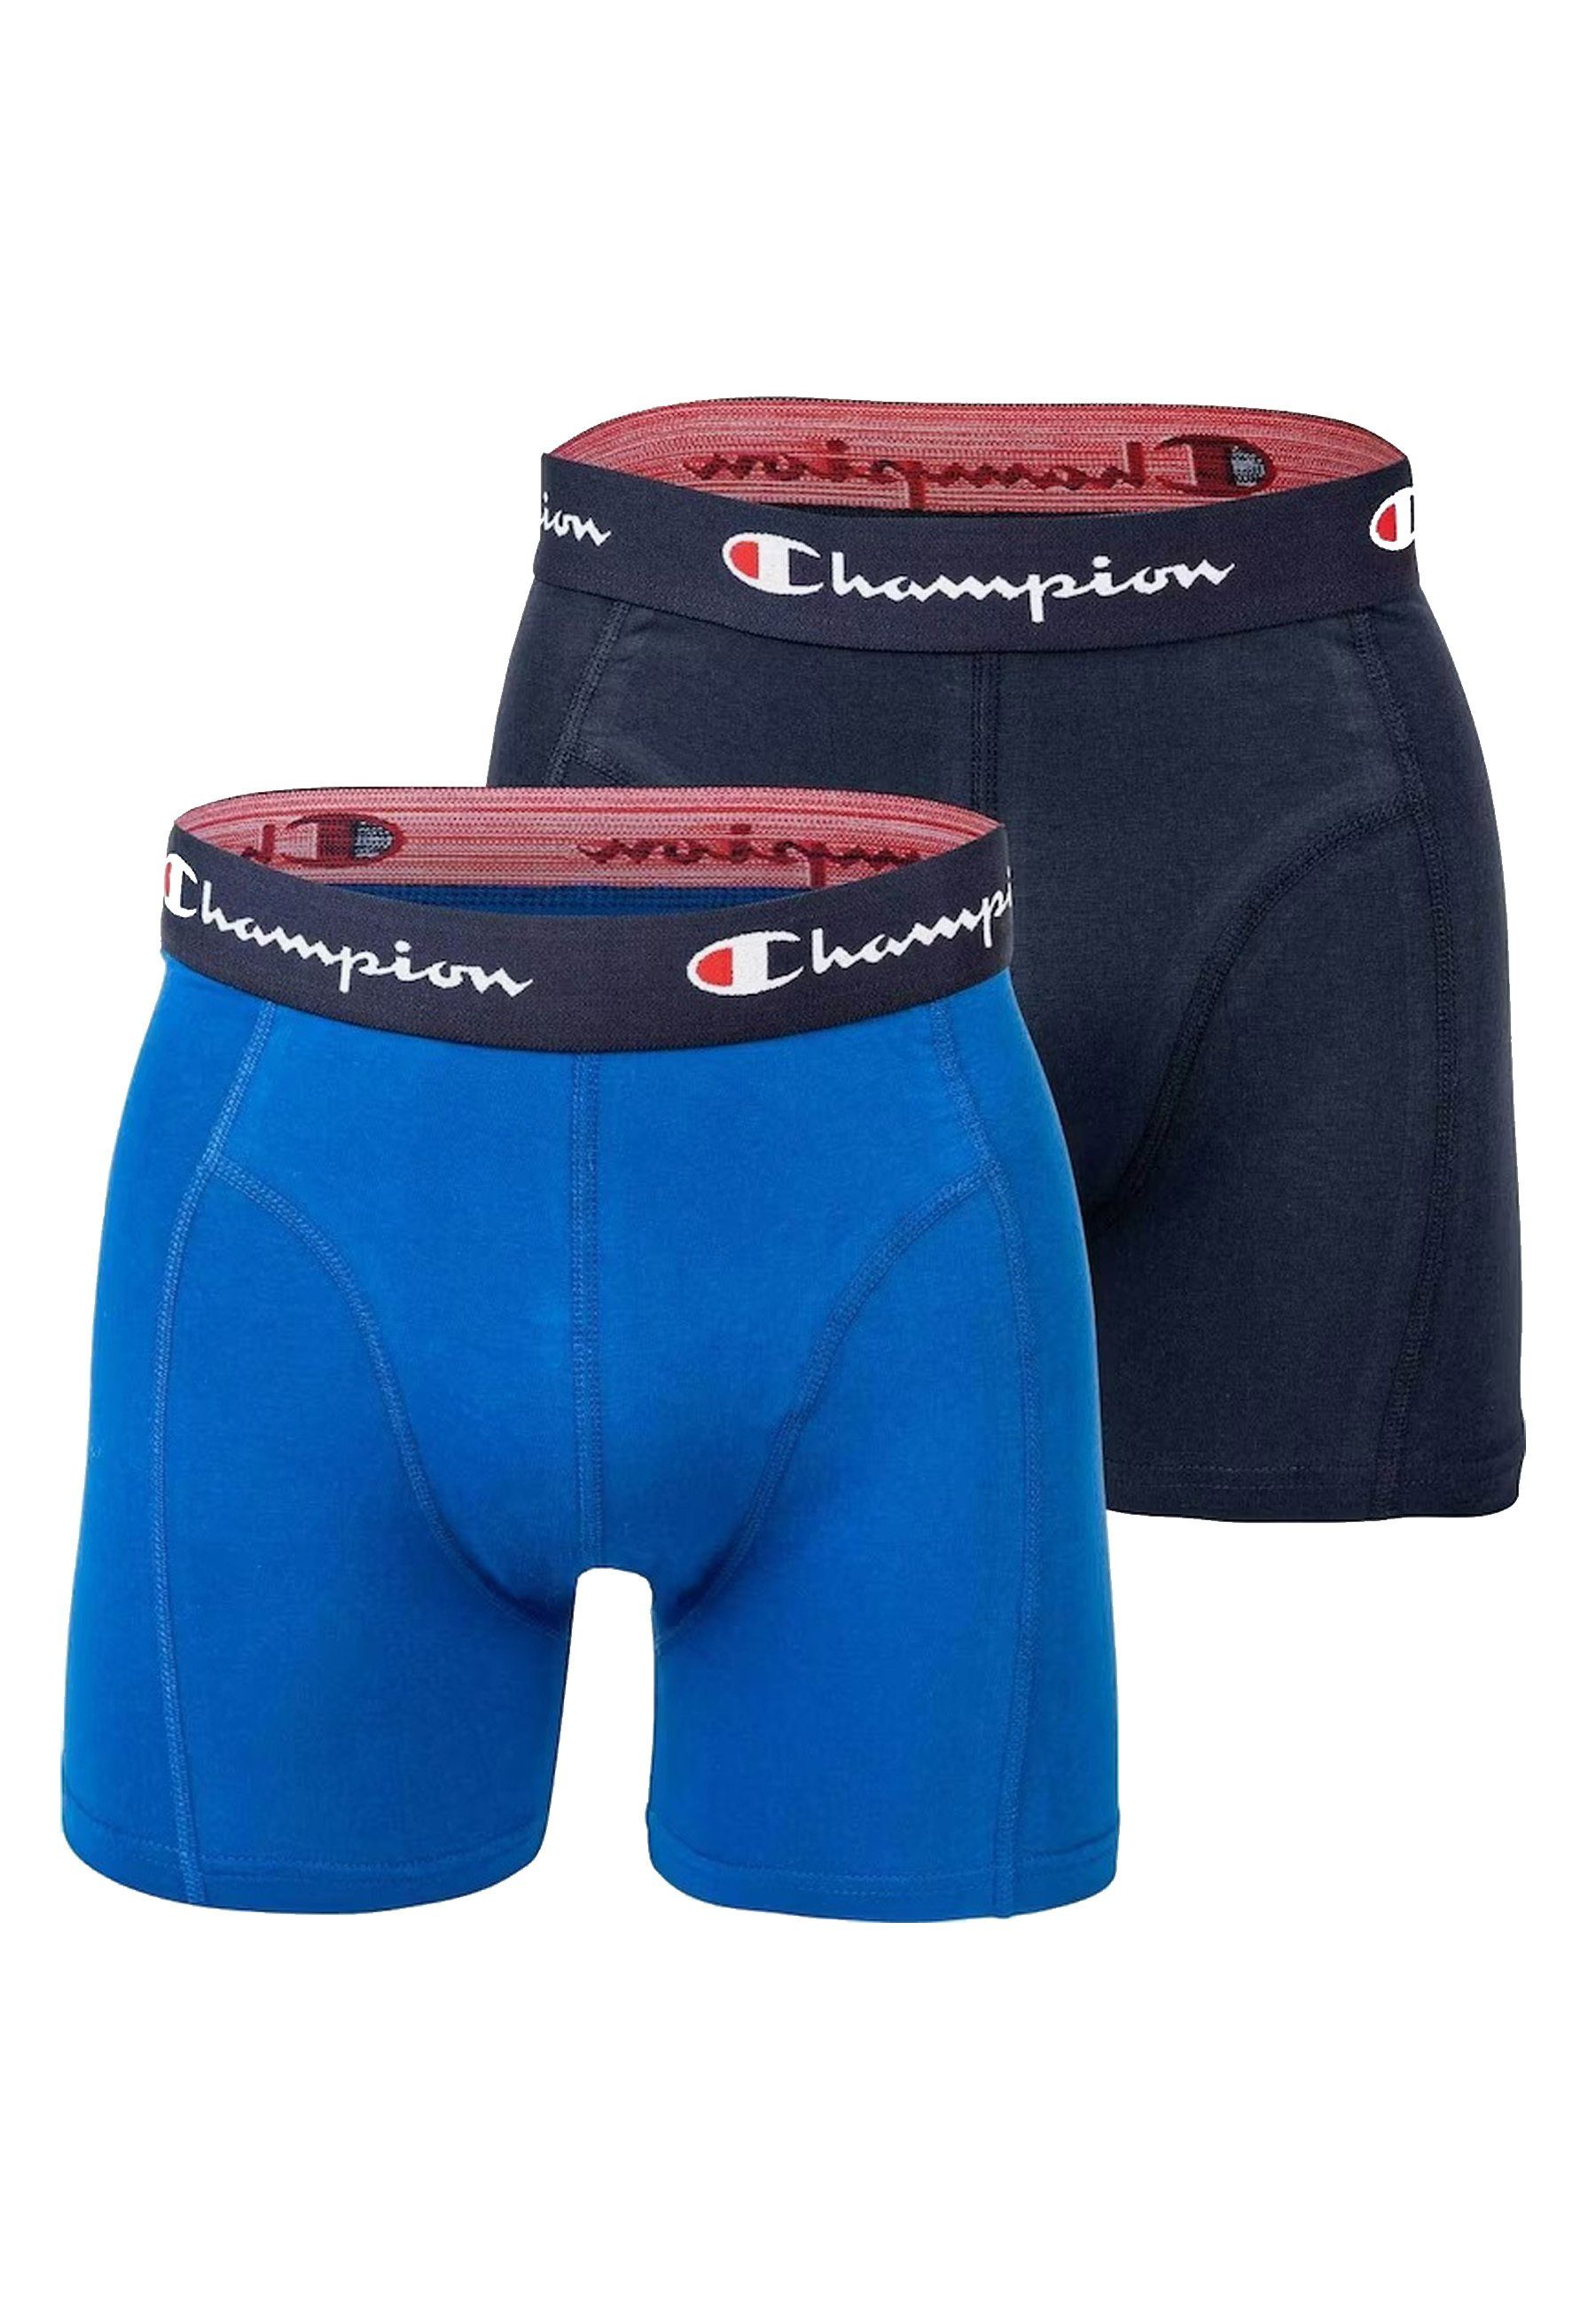 Boxershorts Doppelpack Champion Boxershorts Basic blau Trunks